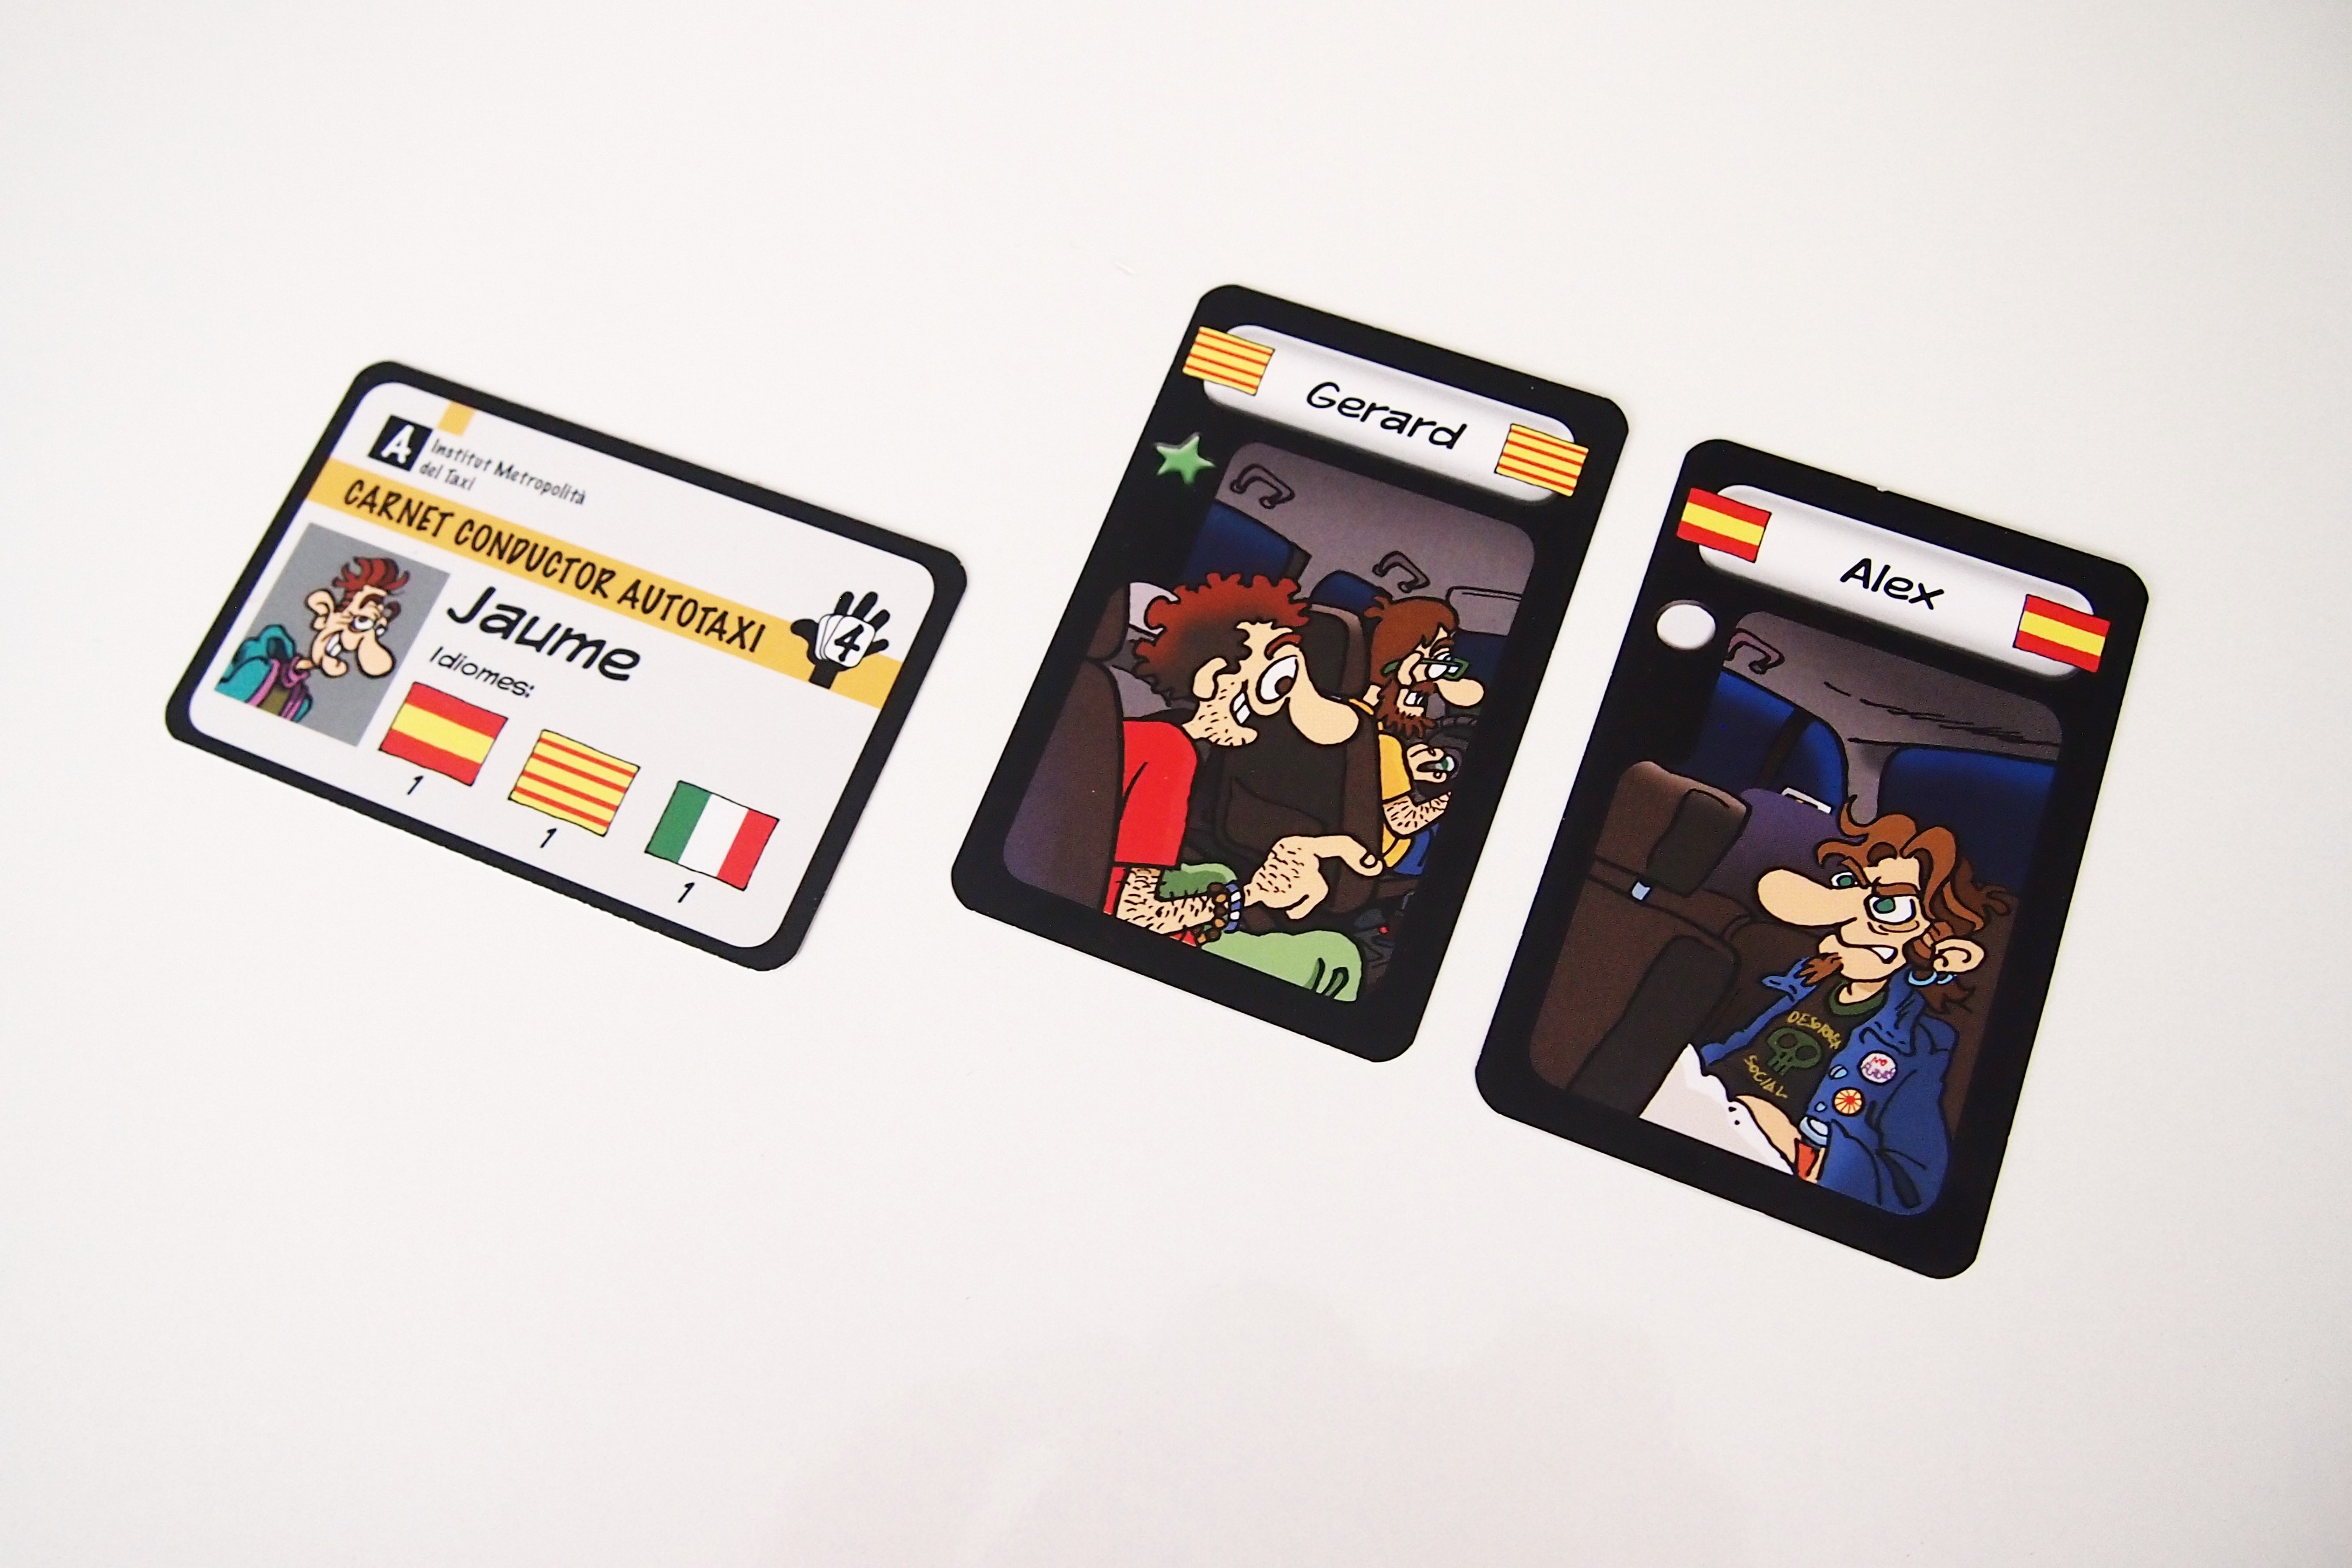 En su turno, cada jugador puede llevar a cabo una acción. Puede optar por incorporar dos cartas de pasajeros a su mano. 